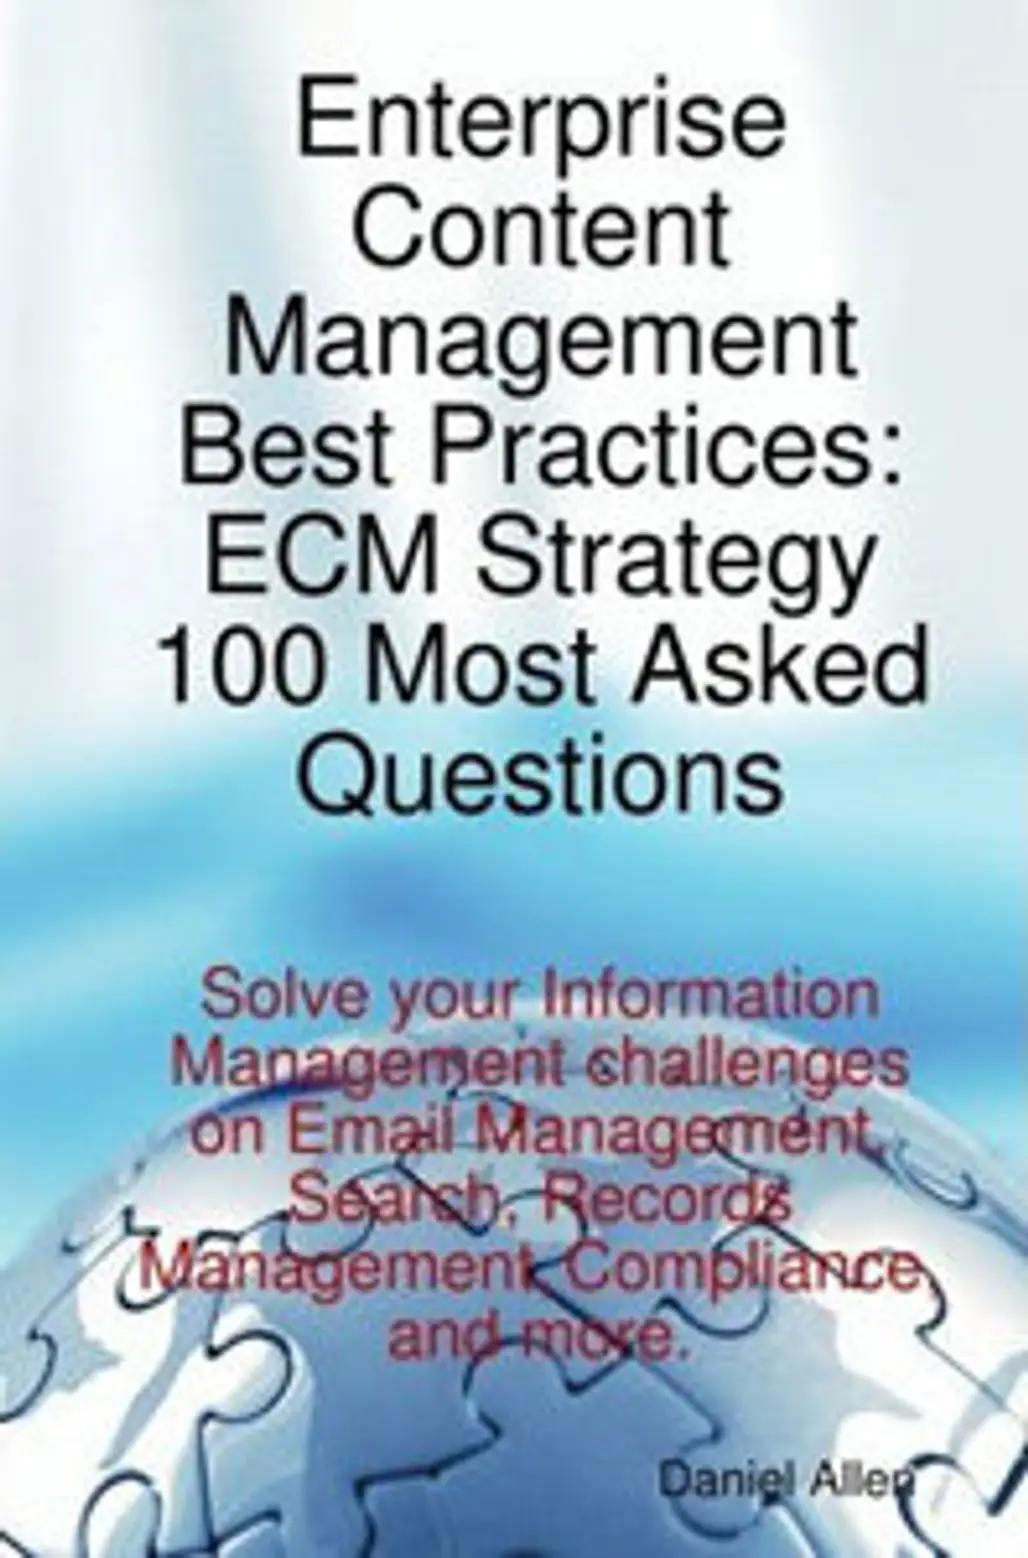 Enterprise Content Management Best Practices: ECM Strategy 100 Most Asked Questions